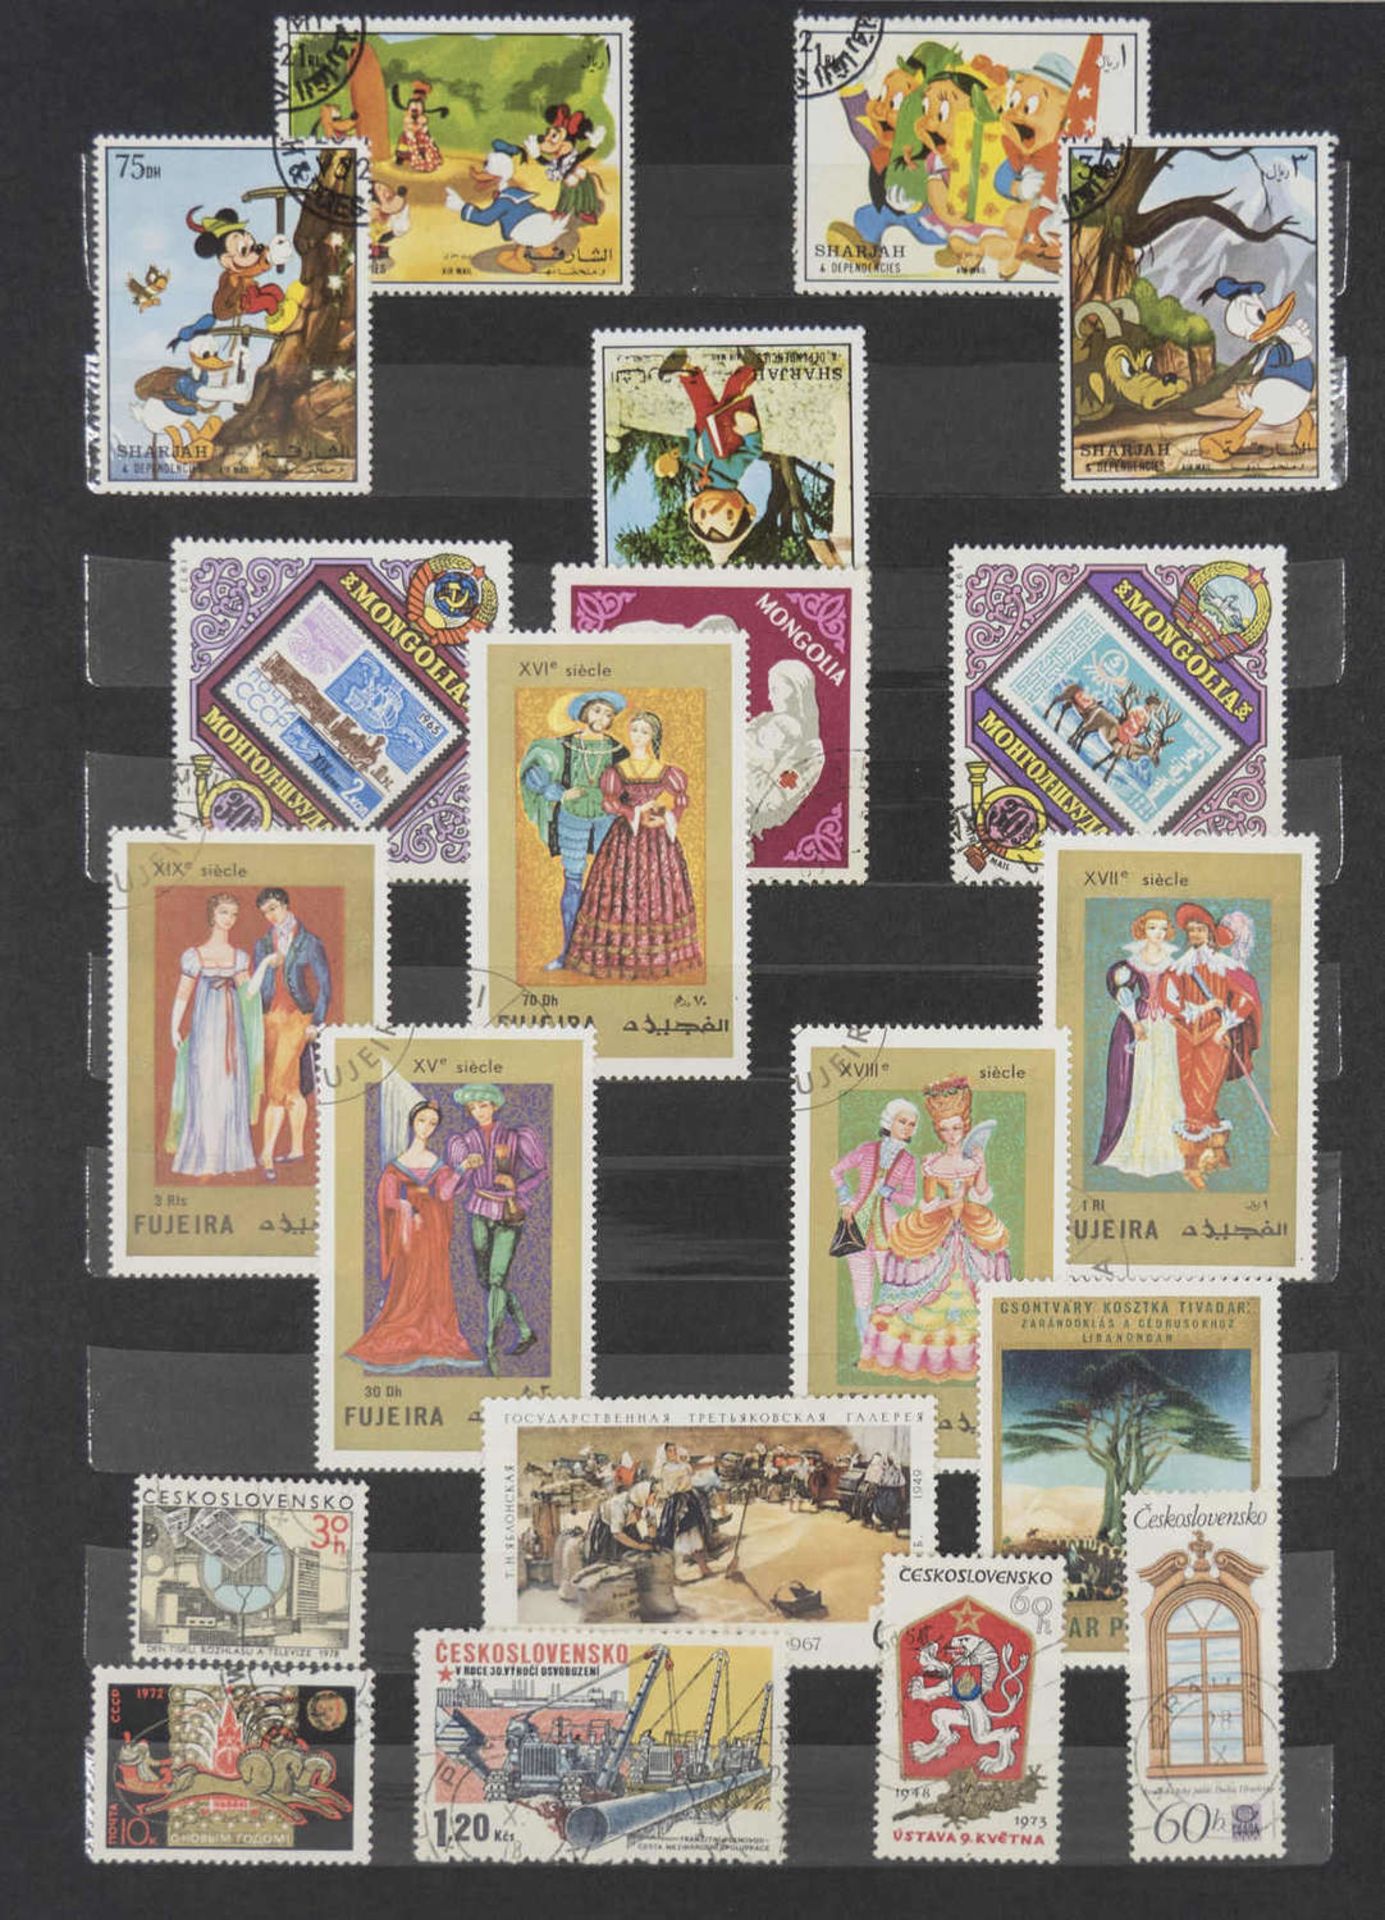 Steck - Album "alrabra" mit Briefmarken - Sammlung aus aller Welt. Überwiegend gestempelt. Eine - Bild 4 aus 13